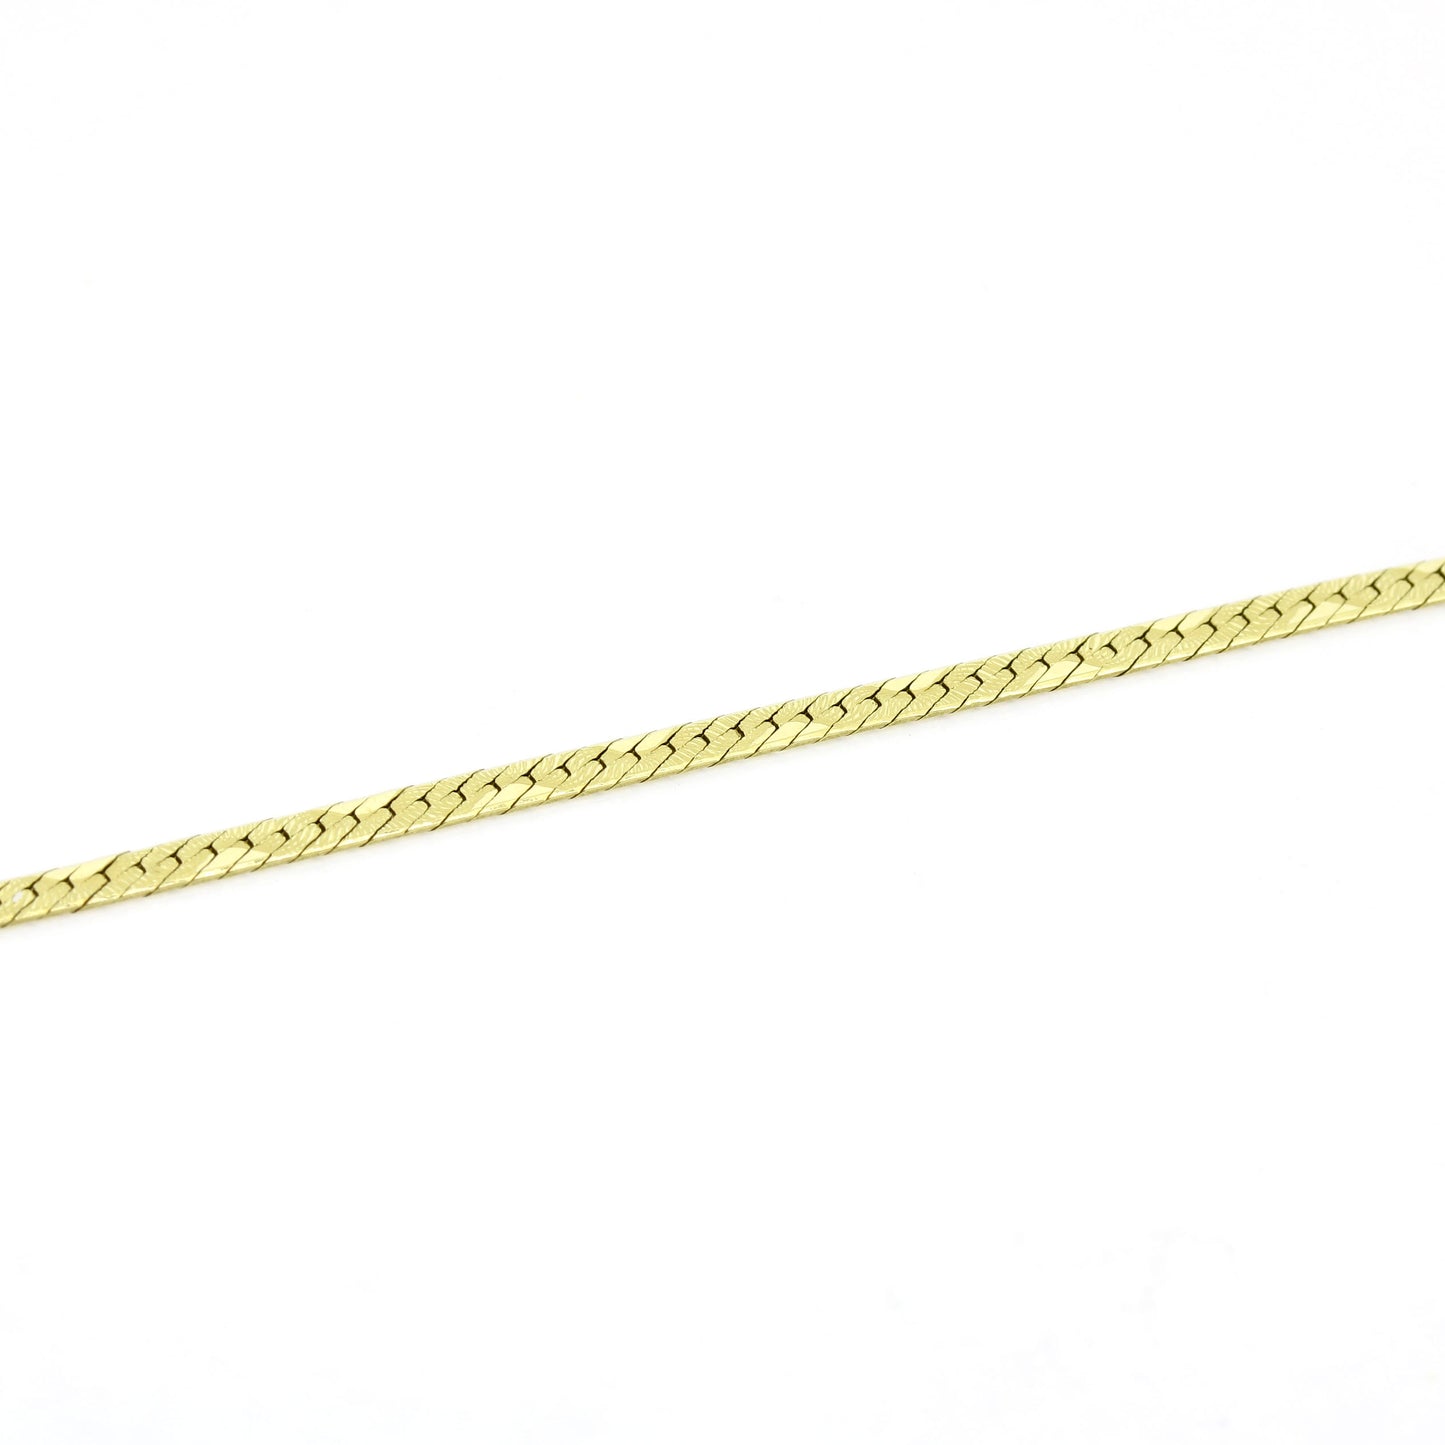 Kette 585 Gelbgold 14 Kt - Flach mit Musterung - Kettenlänge 47 cm - Wert 680,-